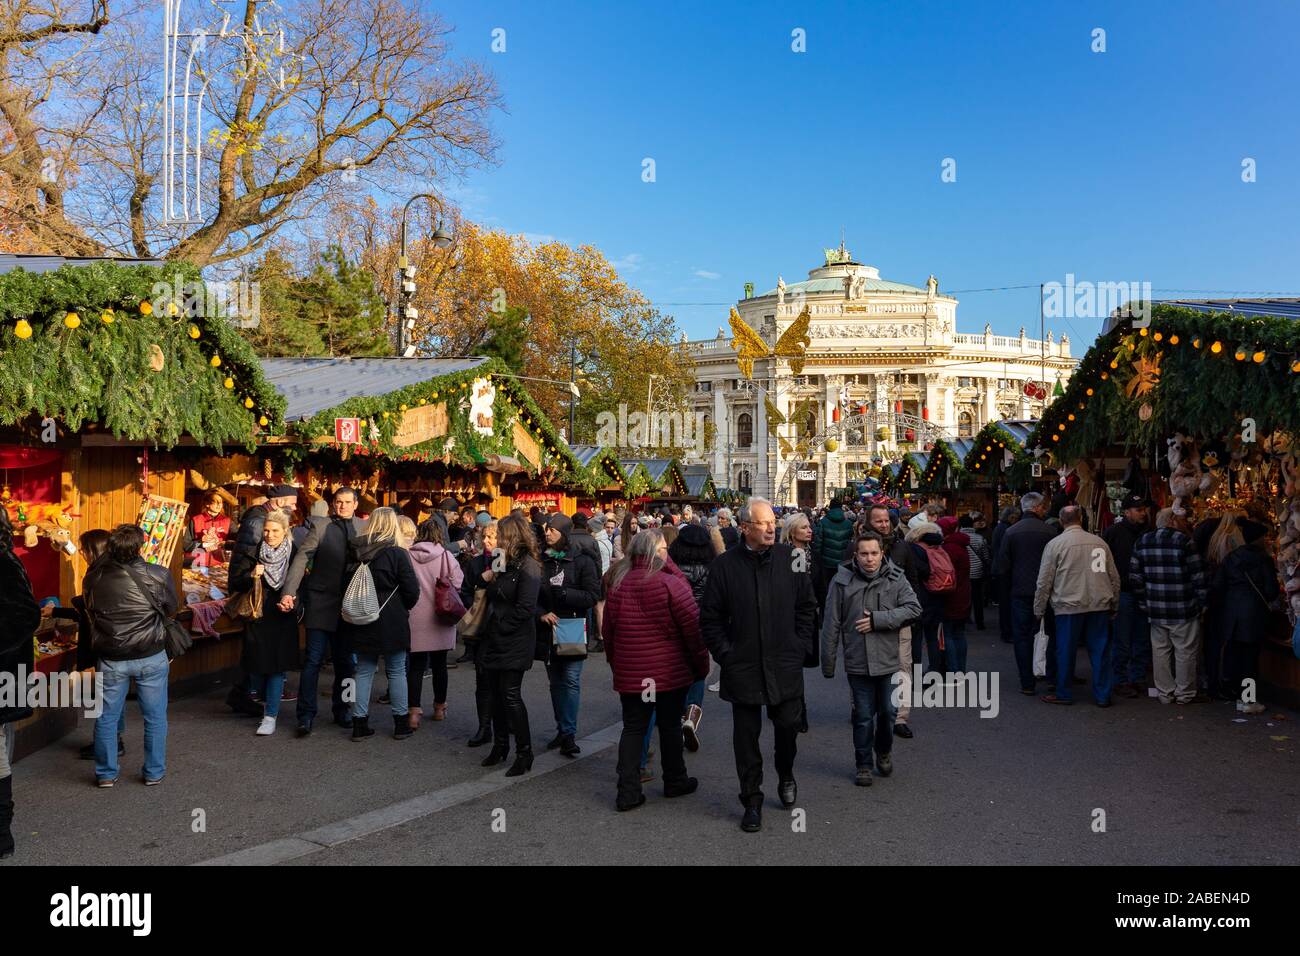 Vienna, Austria - 11.23.2019 : christkindelmarkt daytime vienna rathausplatz christmas market with many people Stock Photo